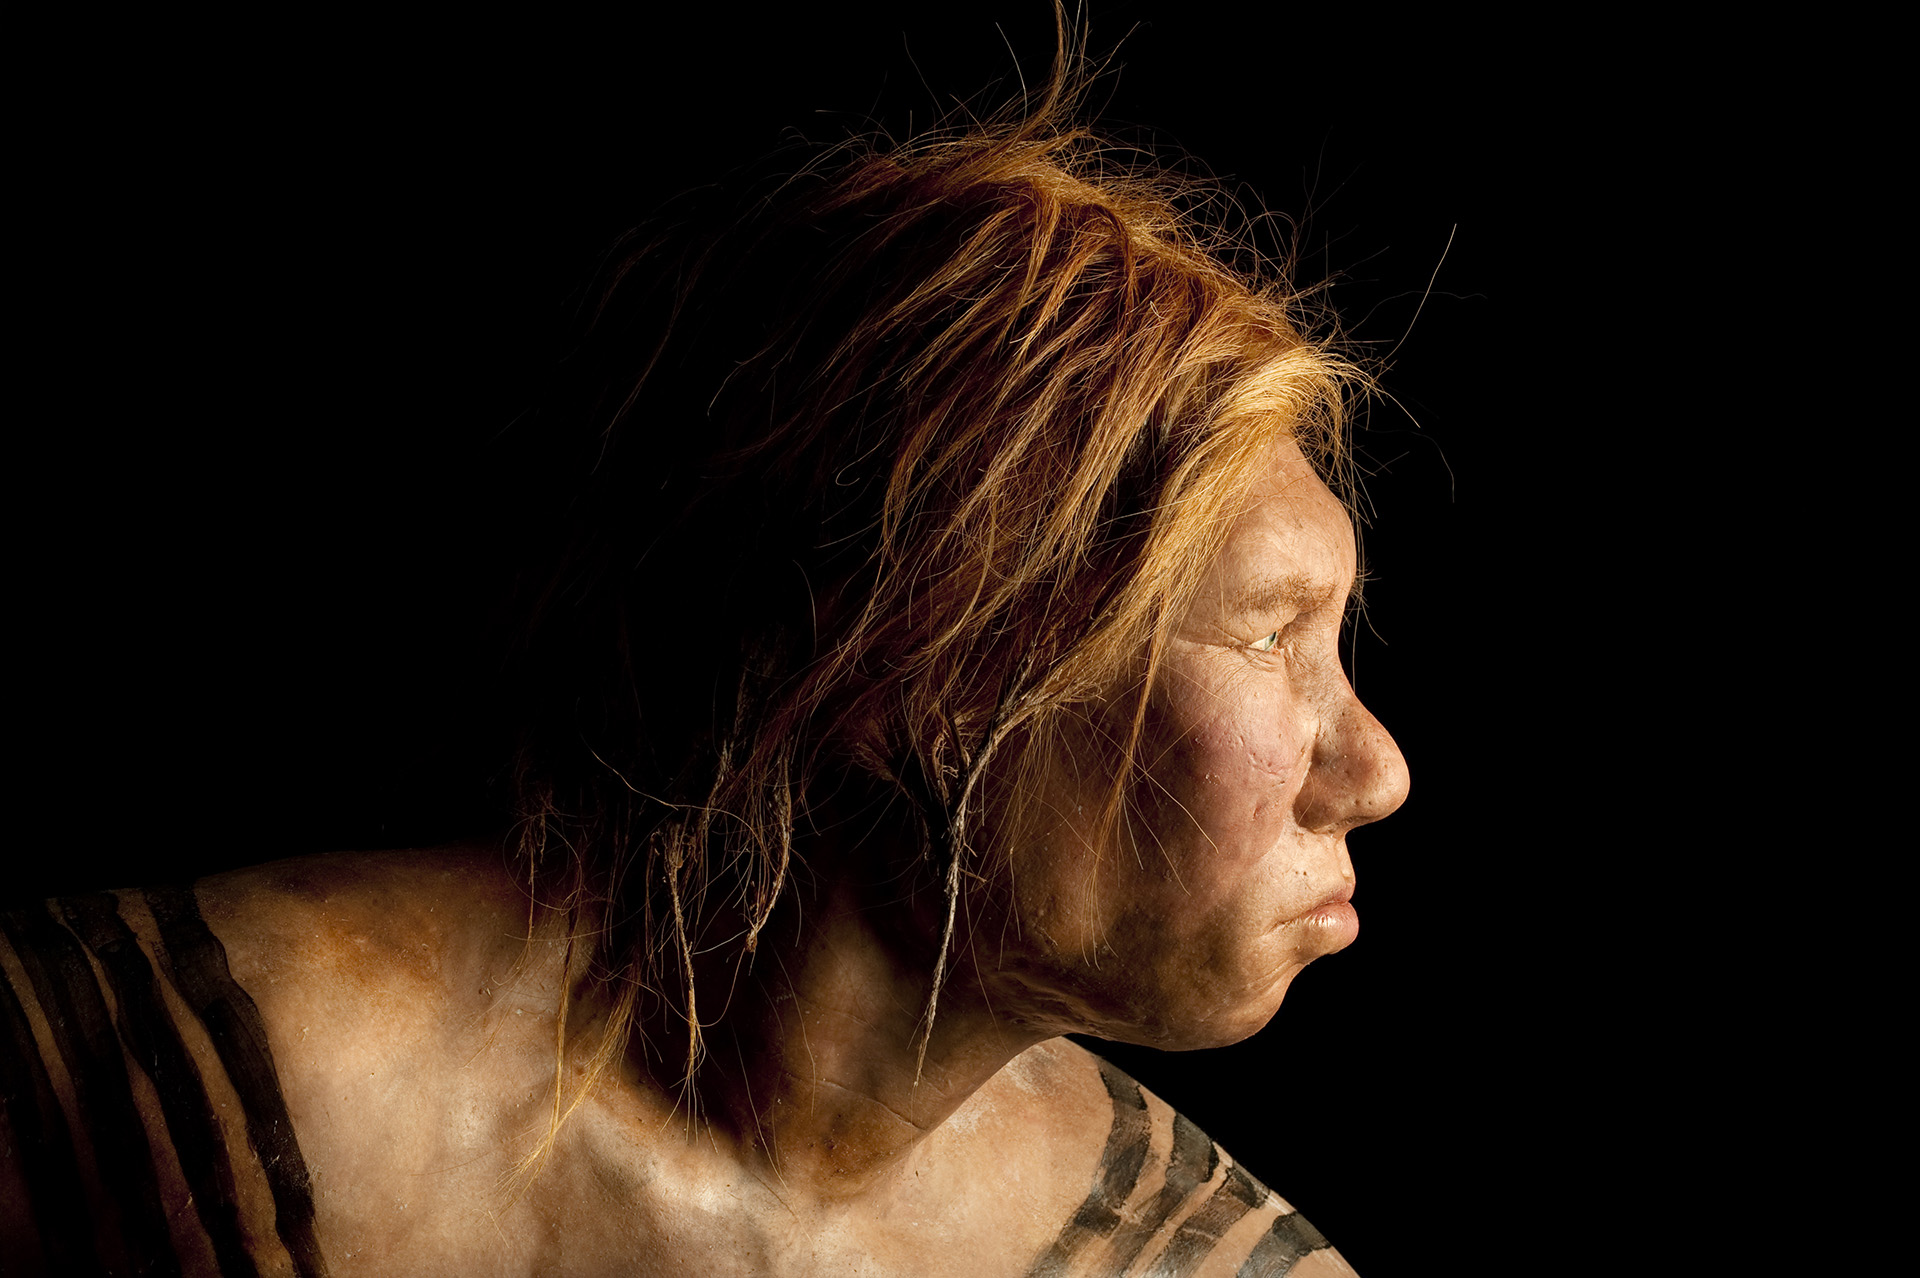 Neander-völgyi ősember viaszfigurája